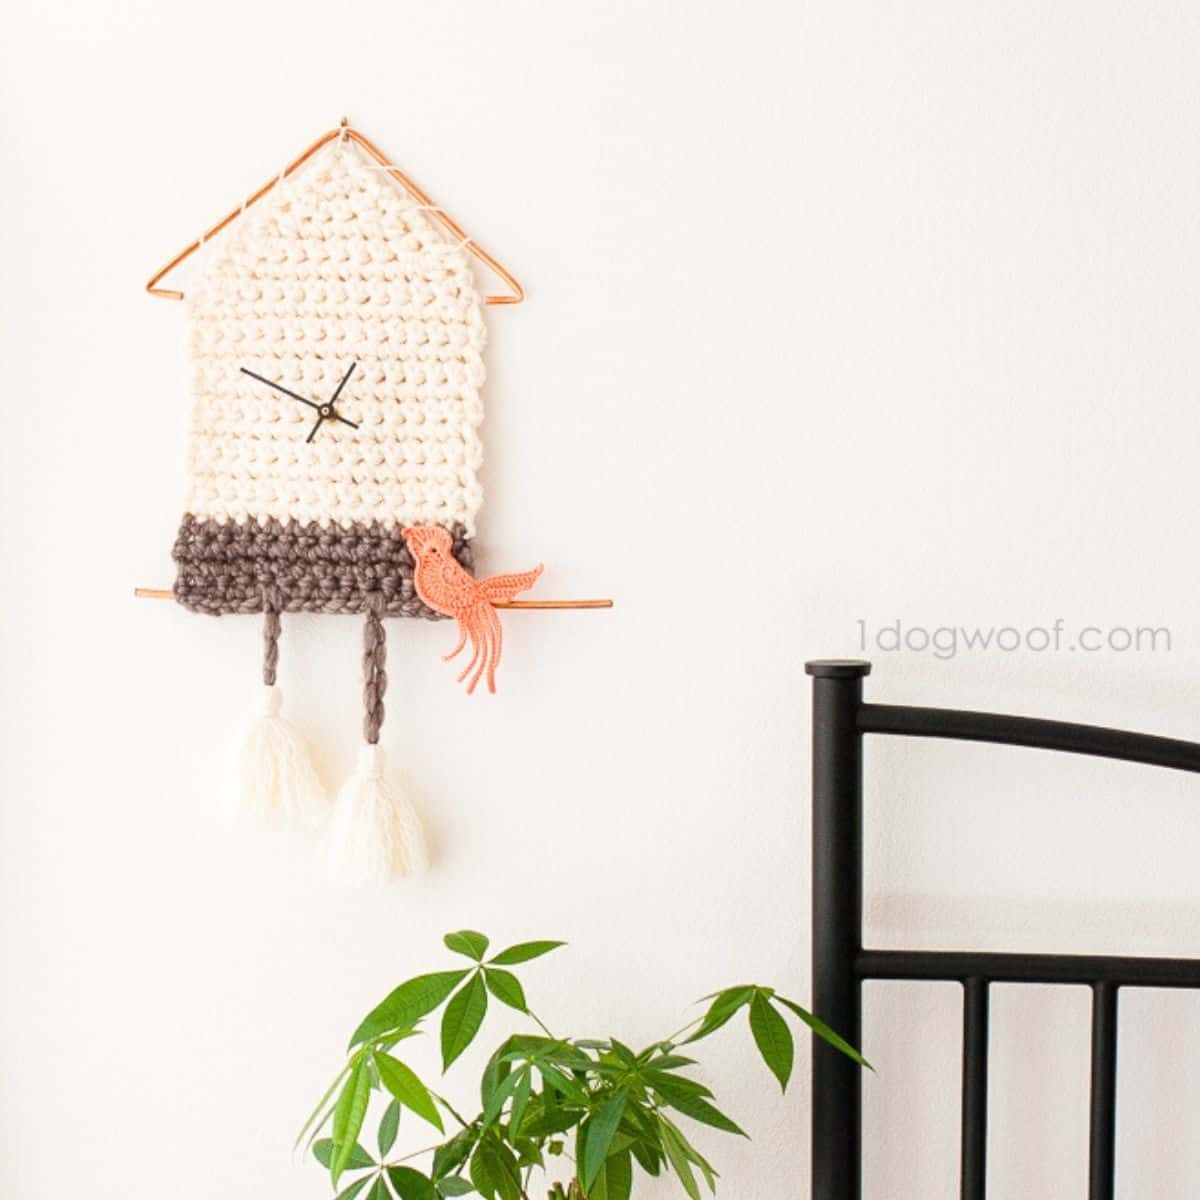 relógio de crochê fofo com um passarinho de crochê empoleirado nele pendurado ao lado de uma cama e acima de uma planta